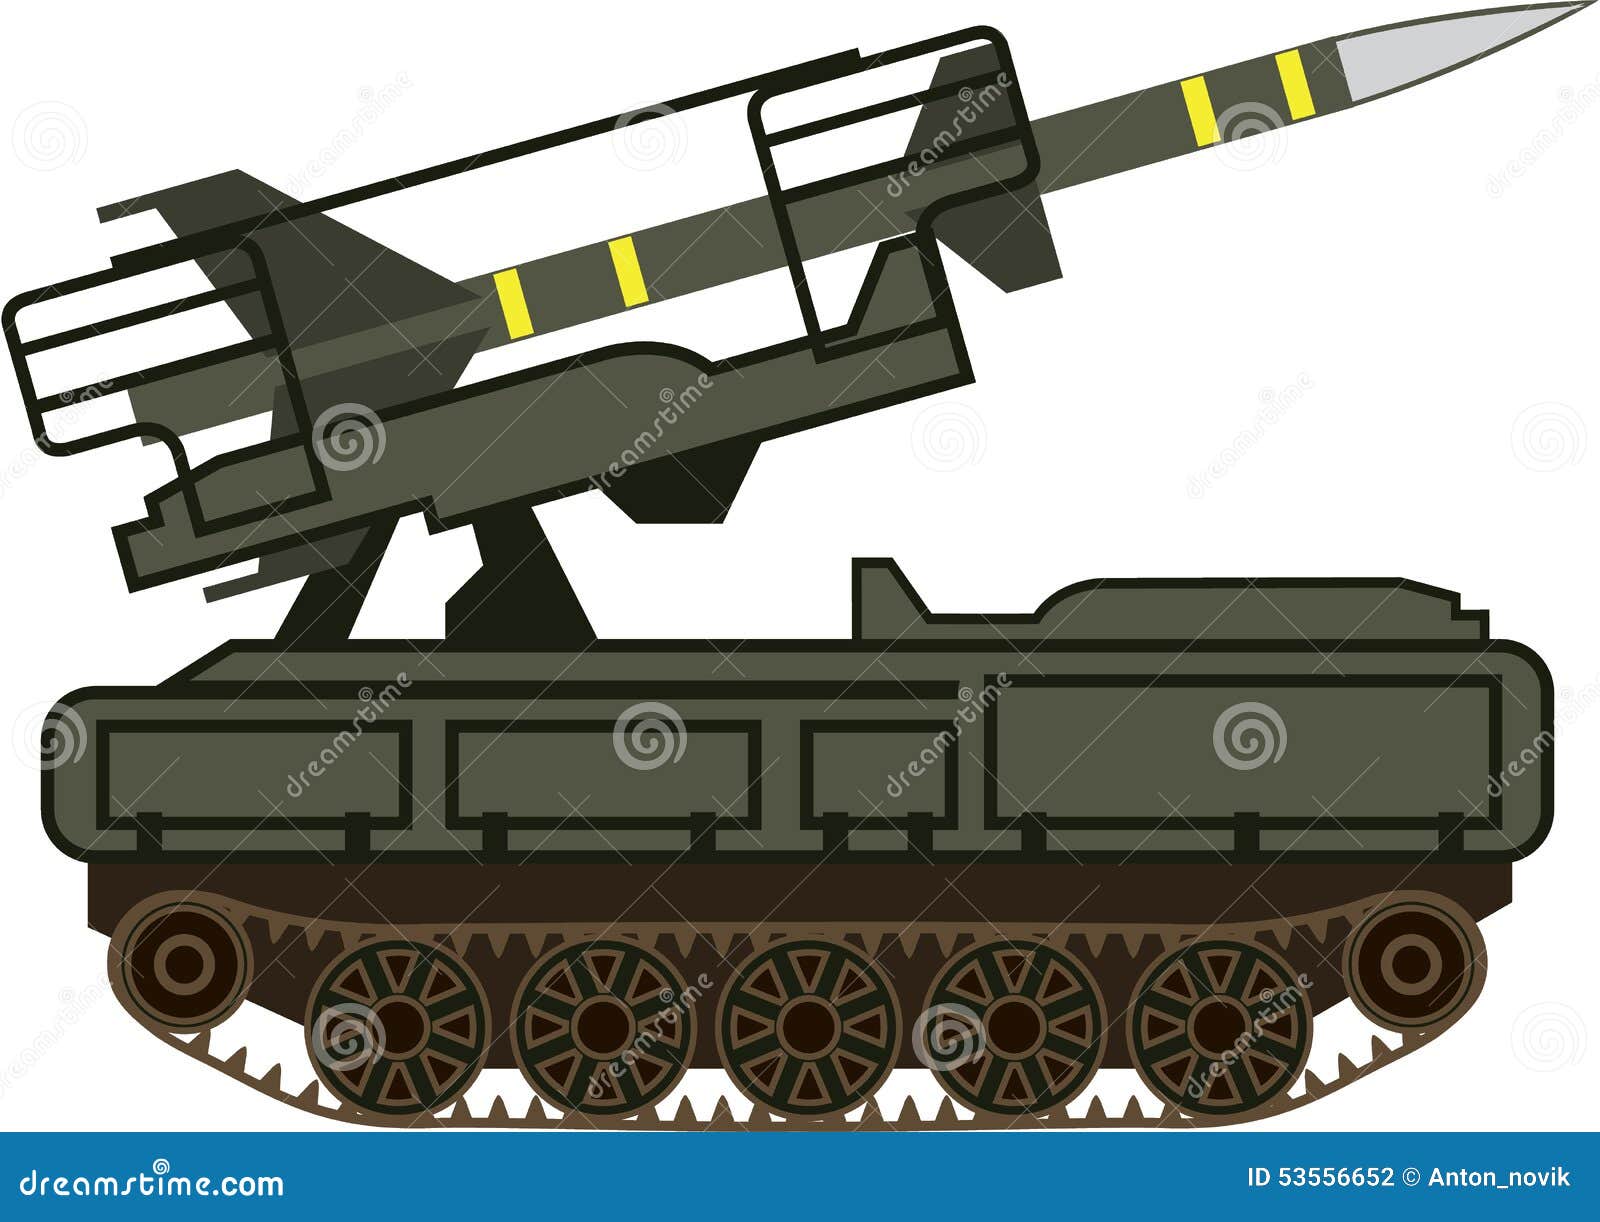 news cartoon net: Cartoon Missile Launcher